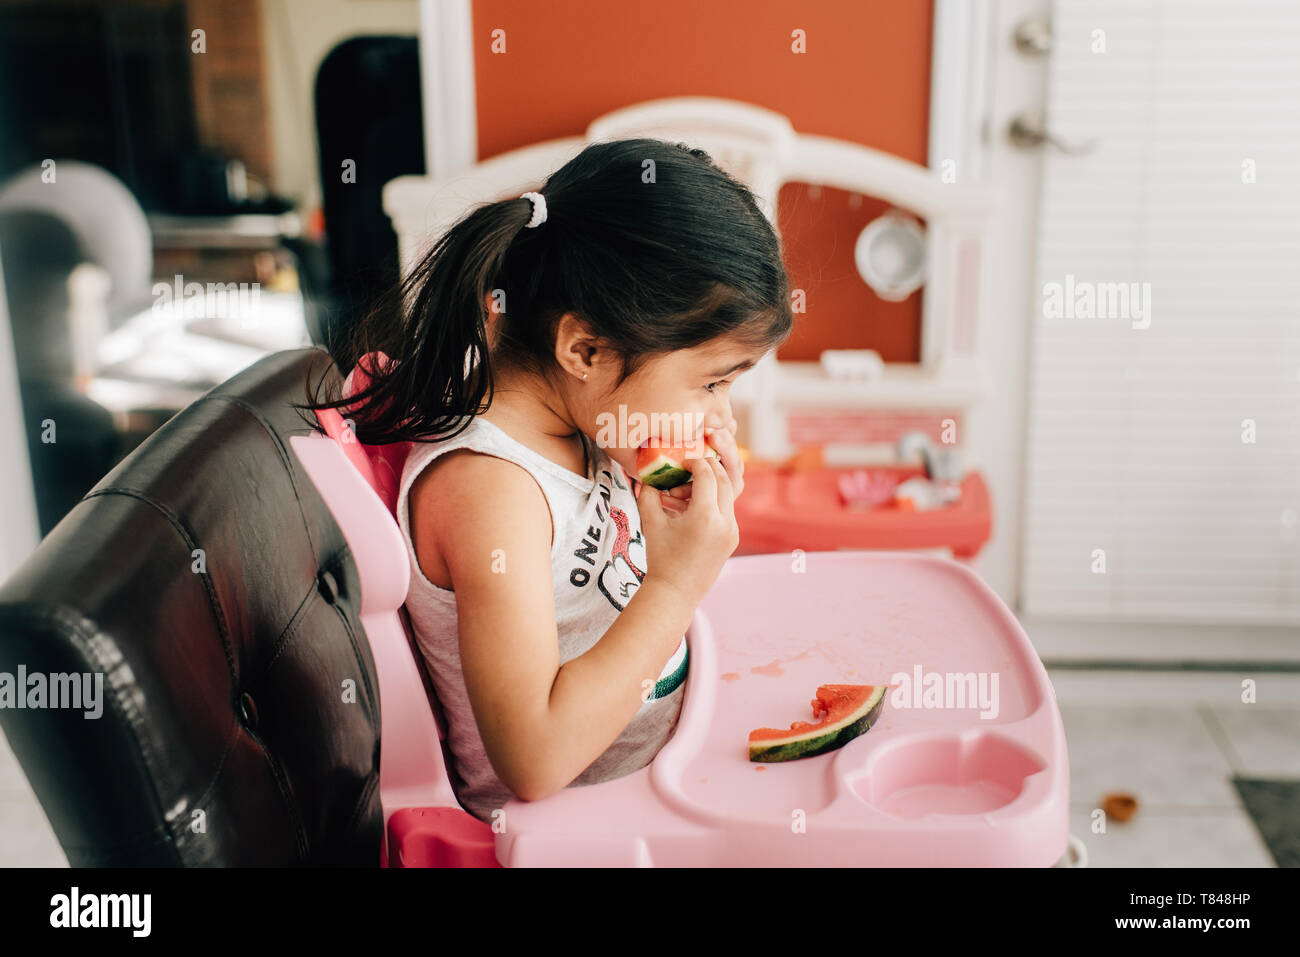 Fille dans une chaise haute de l'eau manger melon, side view Banque D'Images